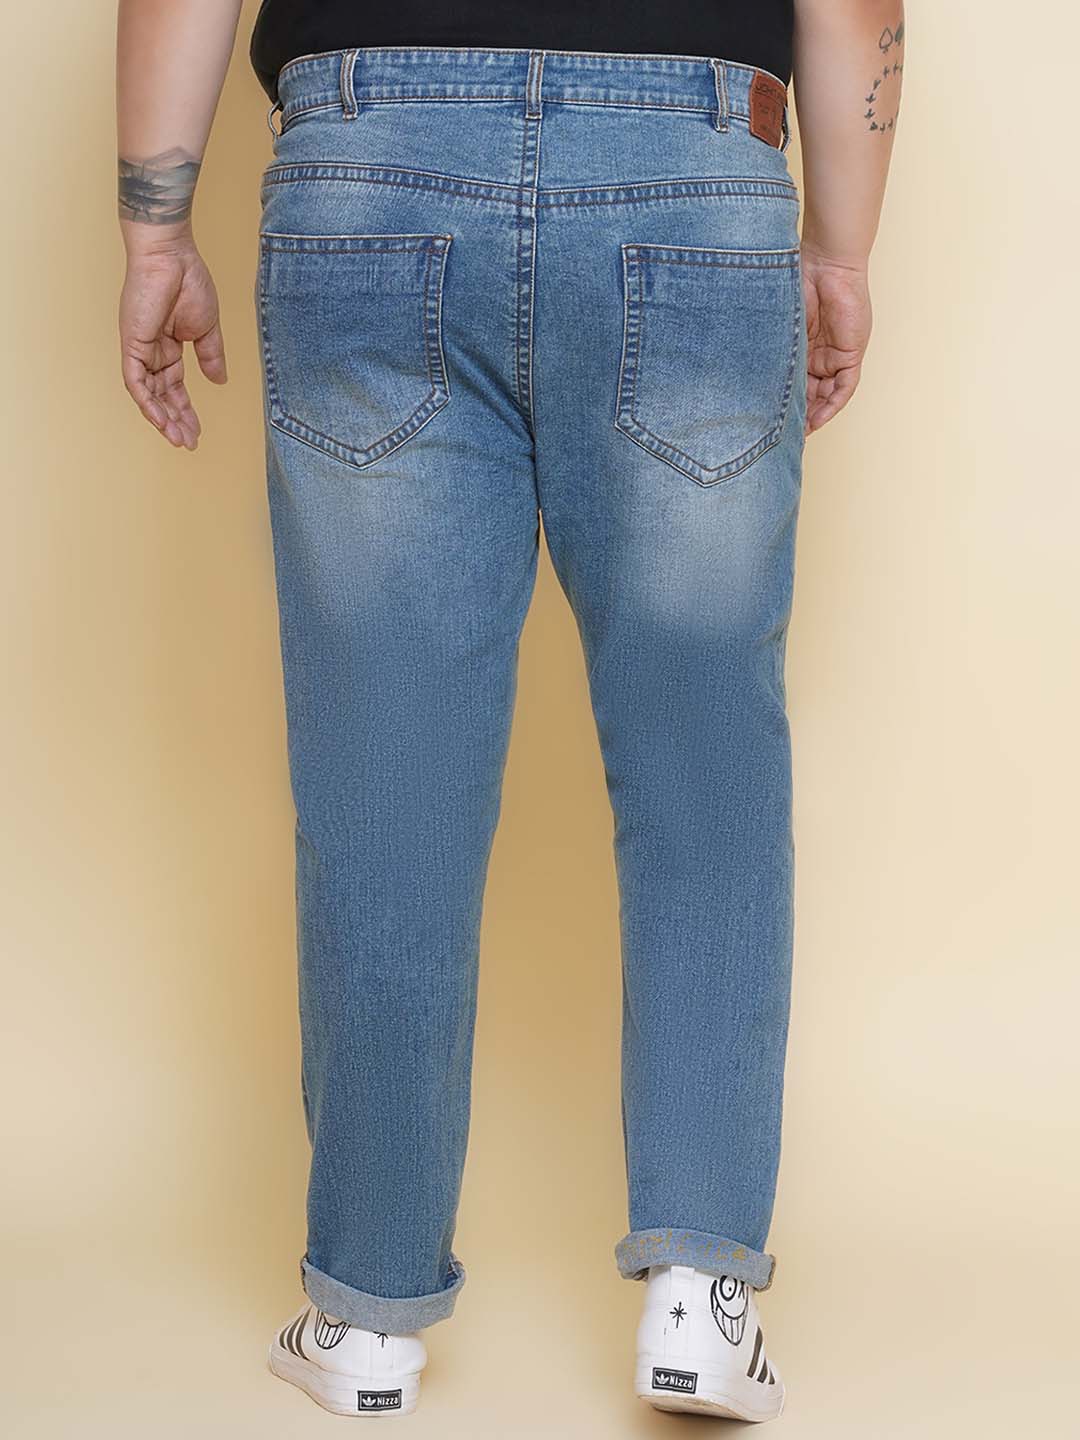 bottomwear/jeans/JPJ12404/jpj12404-5.jpg